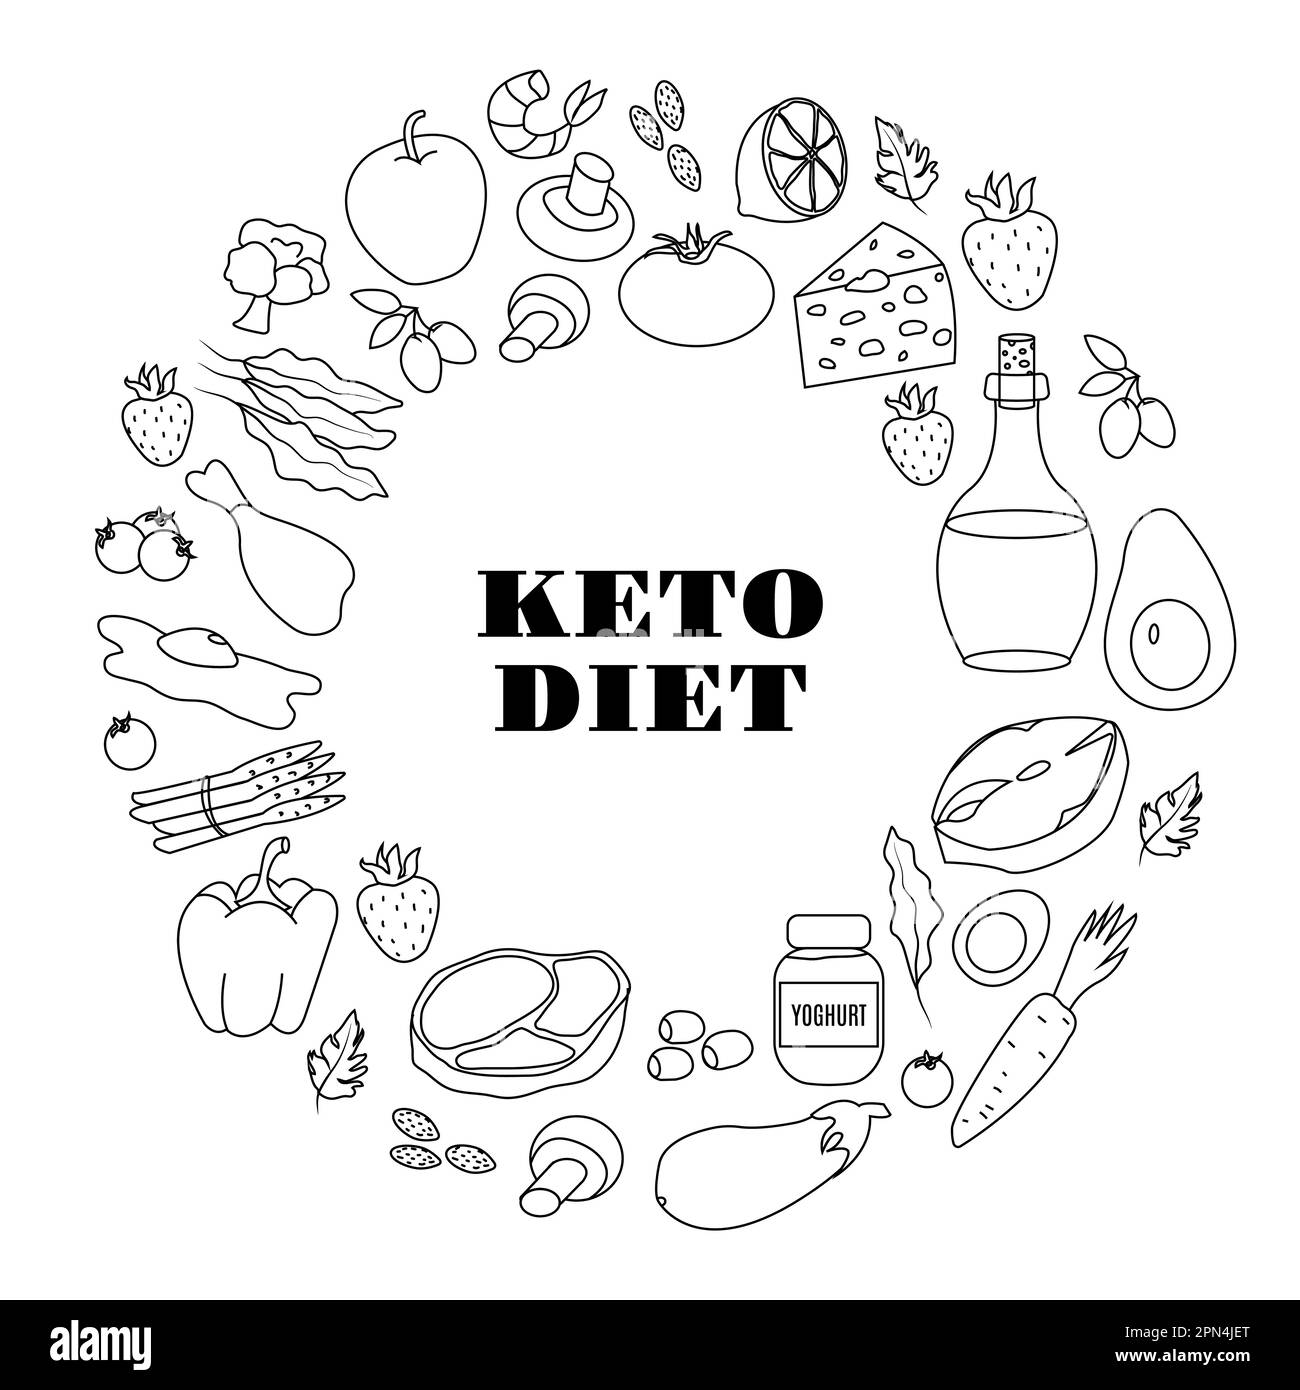 Ketogene Diät. Eine große Auswahl an Produkten für die Keto-Diät. Liniensymbole in Runde. Vektordarstellung. Stock Vektor